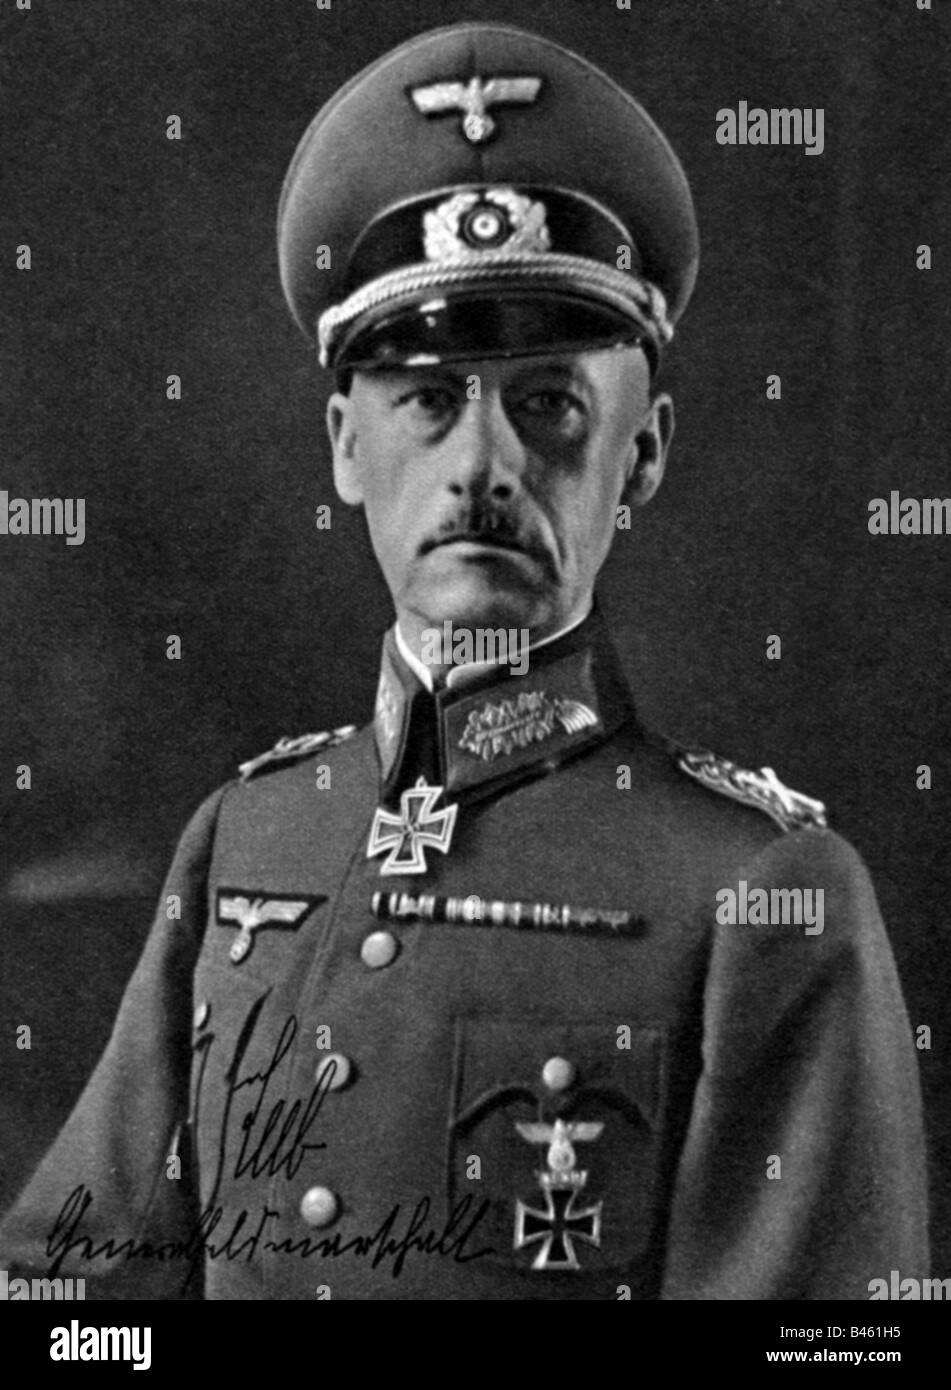 Leeb, Wilhelm Ritter von, 5.9.1876 - 29.4.1956, Generale Tedesco, Ritratto, supplemento di "Voelkischer Beobachter", 1940, Foto Stock